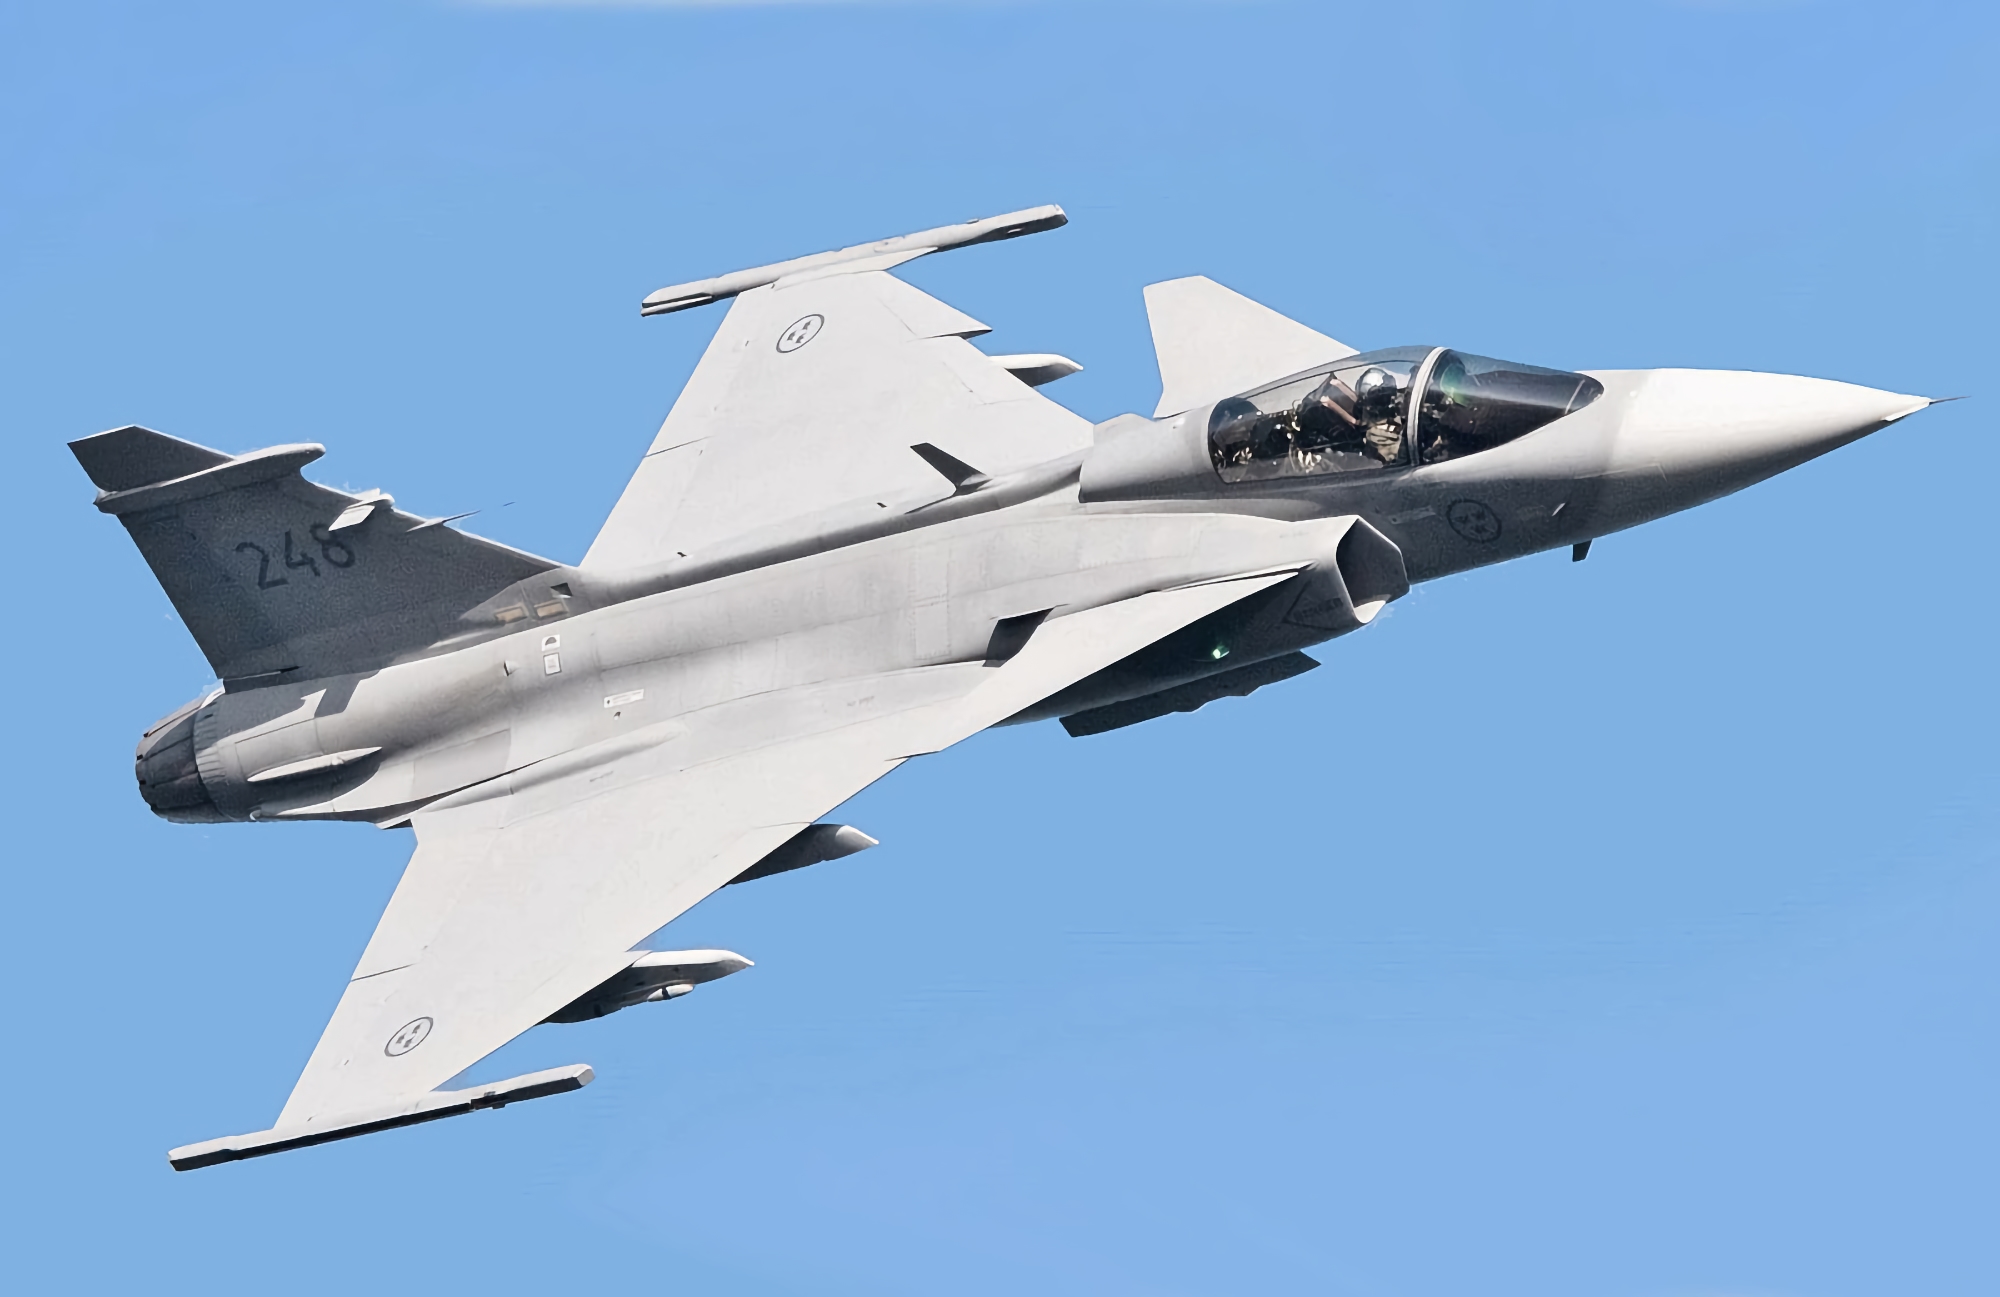 Les États-Unis envisagent de remettre des avions de combat européens à l'Ukraine : il pourrait s'agir de Gripen, de Dassault Rafale ou de Eurofighter Typhoon